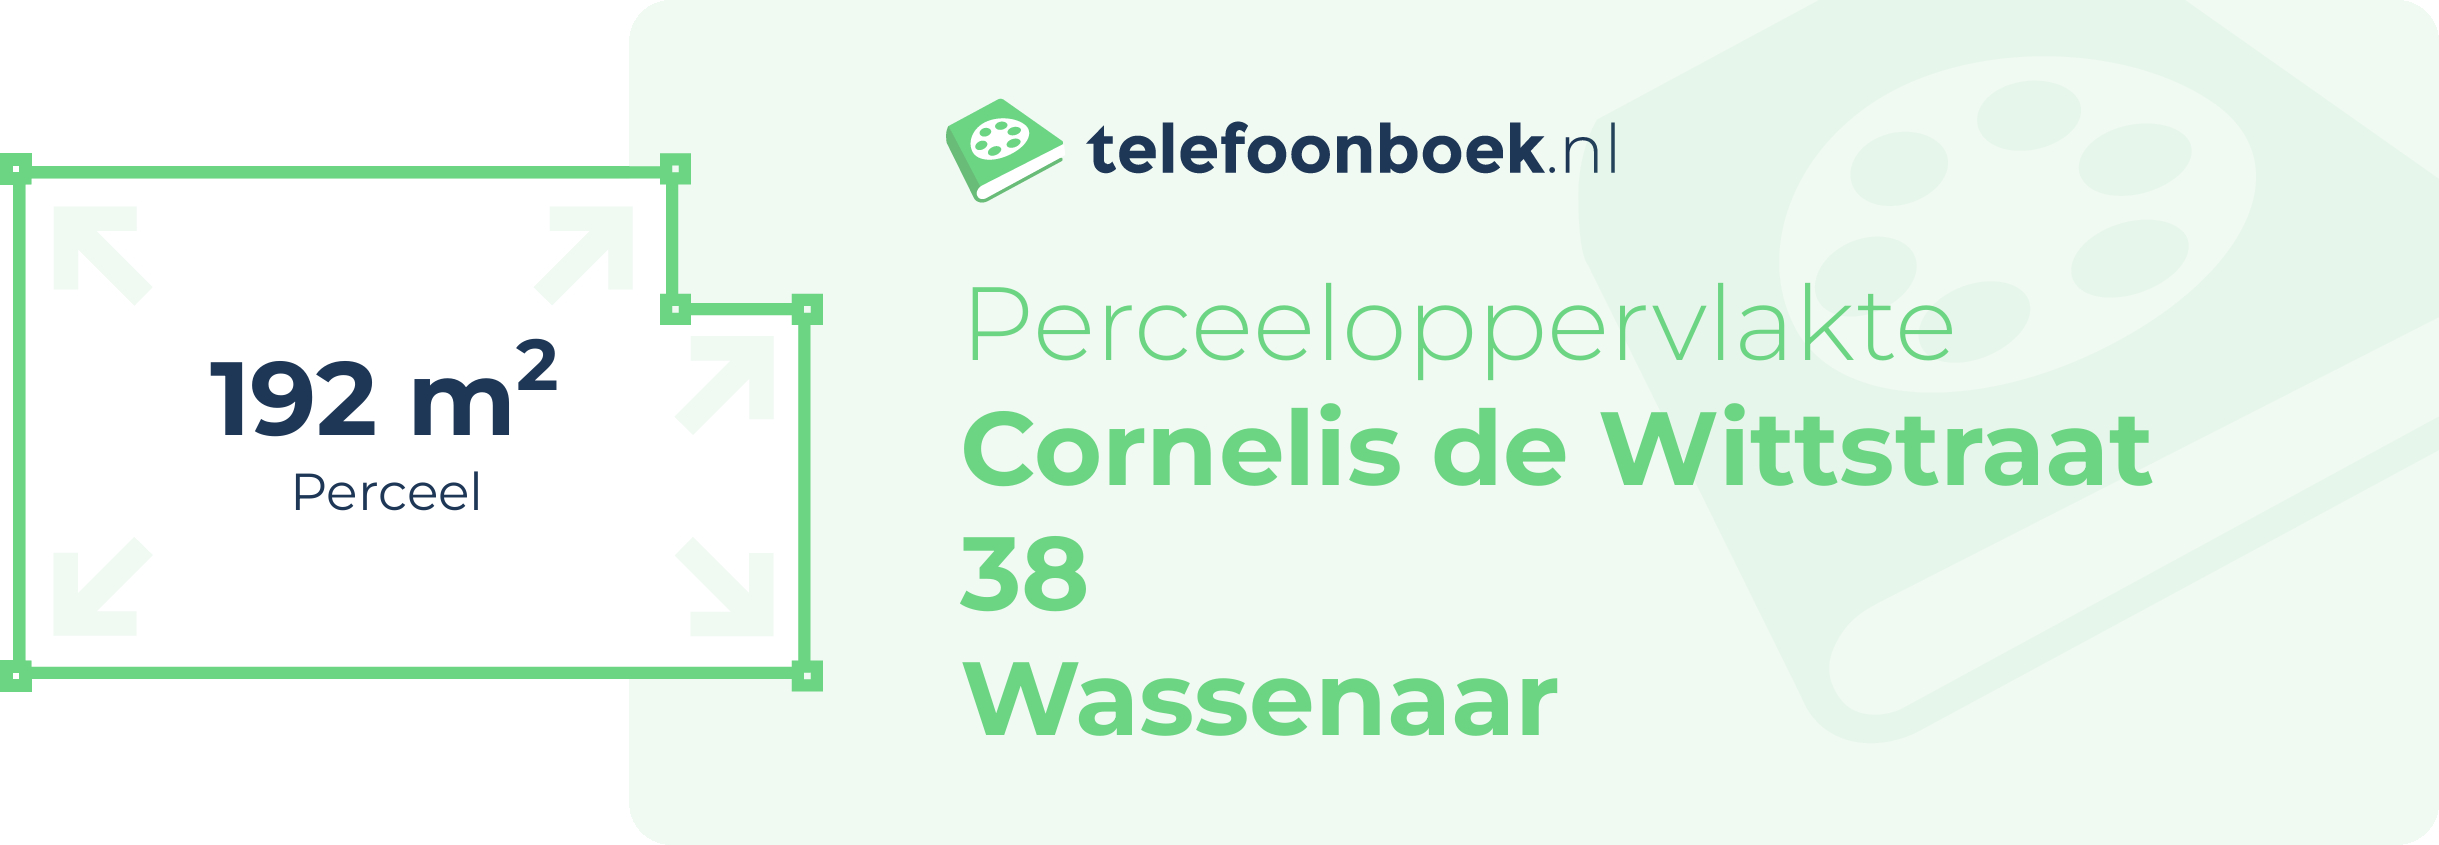 Perceeloppervlakte Cornelis De Wittstraat 38 Wassenaar